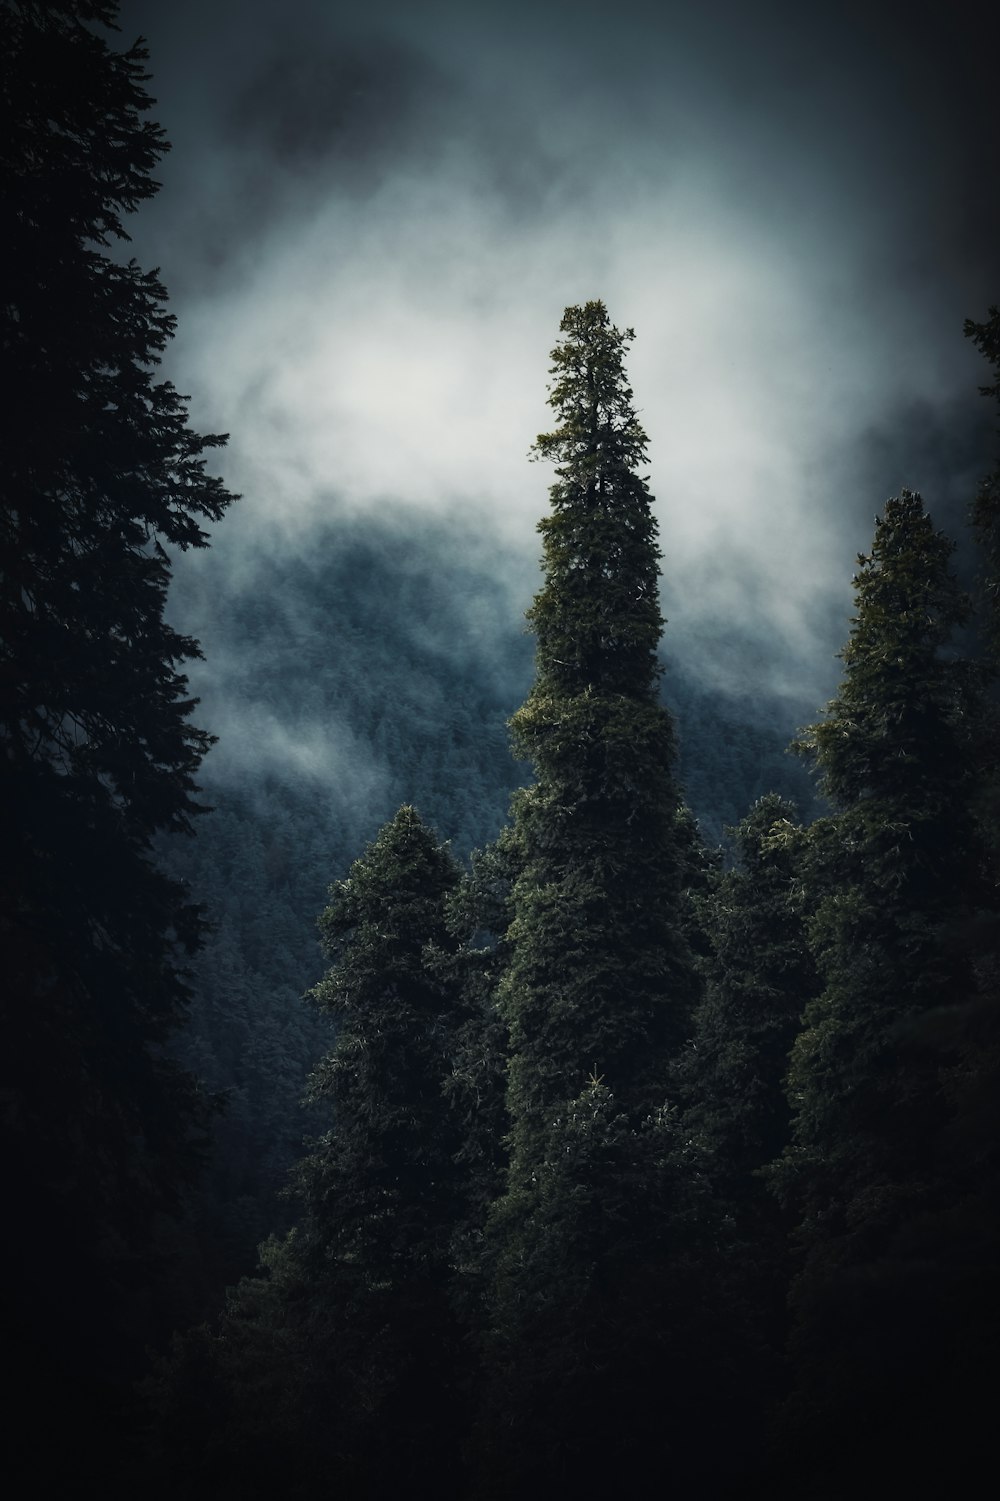 Un bosque oscuro lleno de árboles bajo un cielo nublado